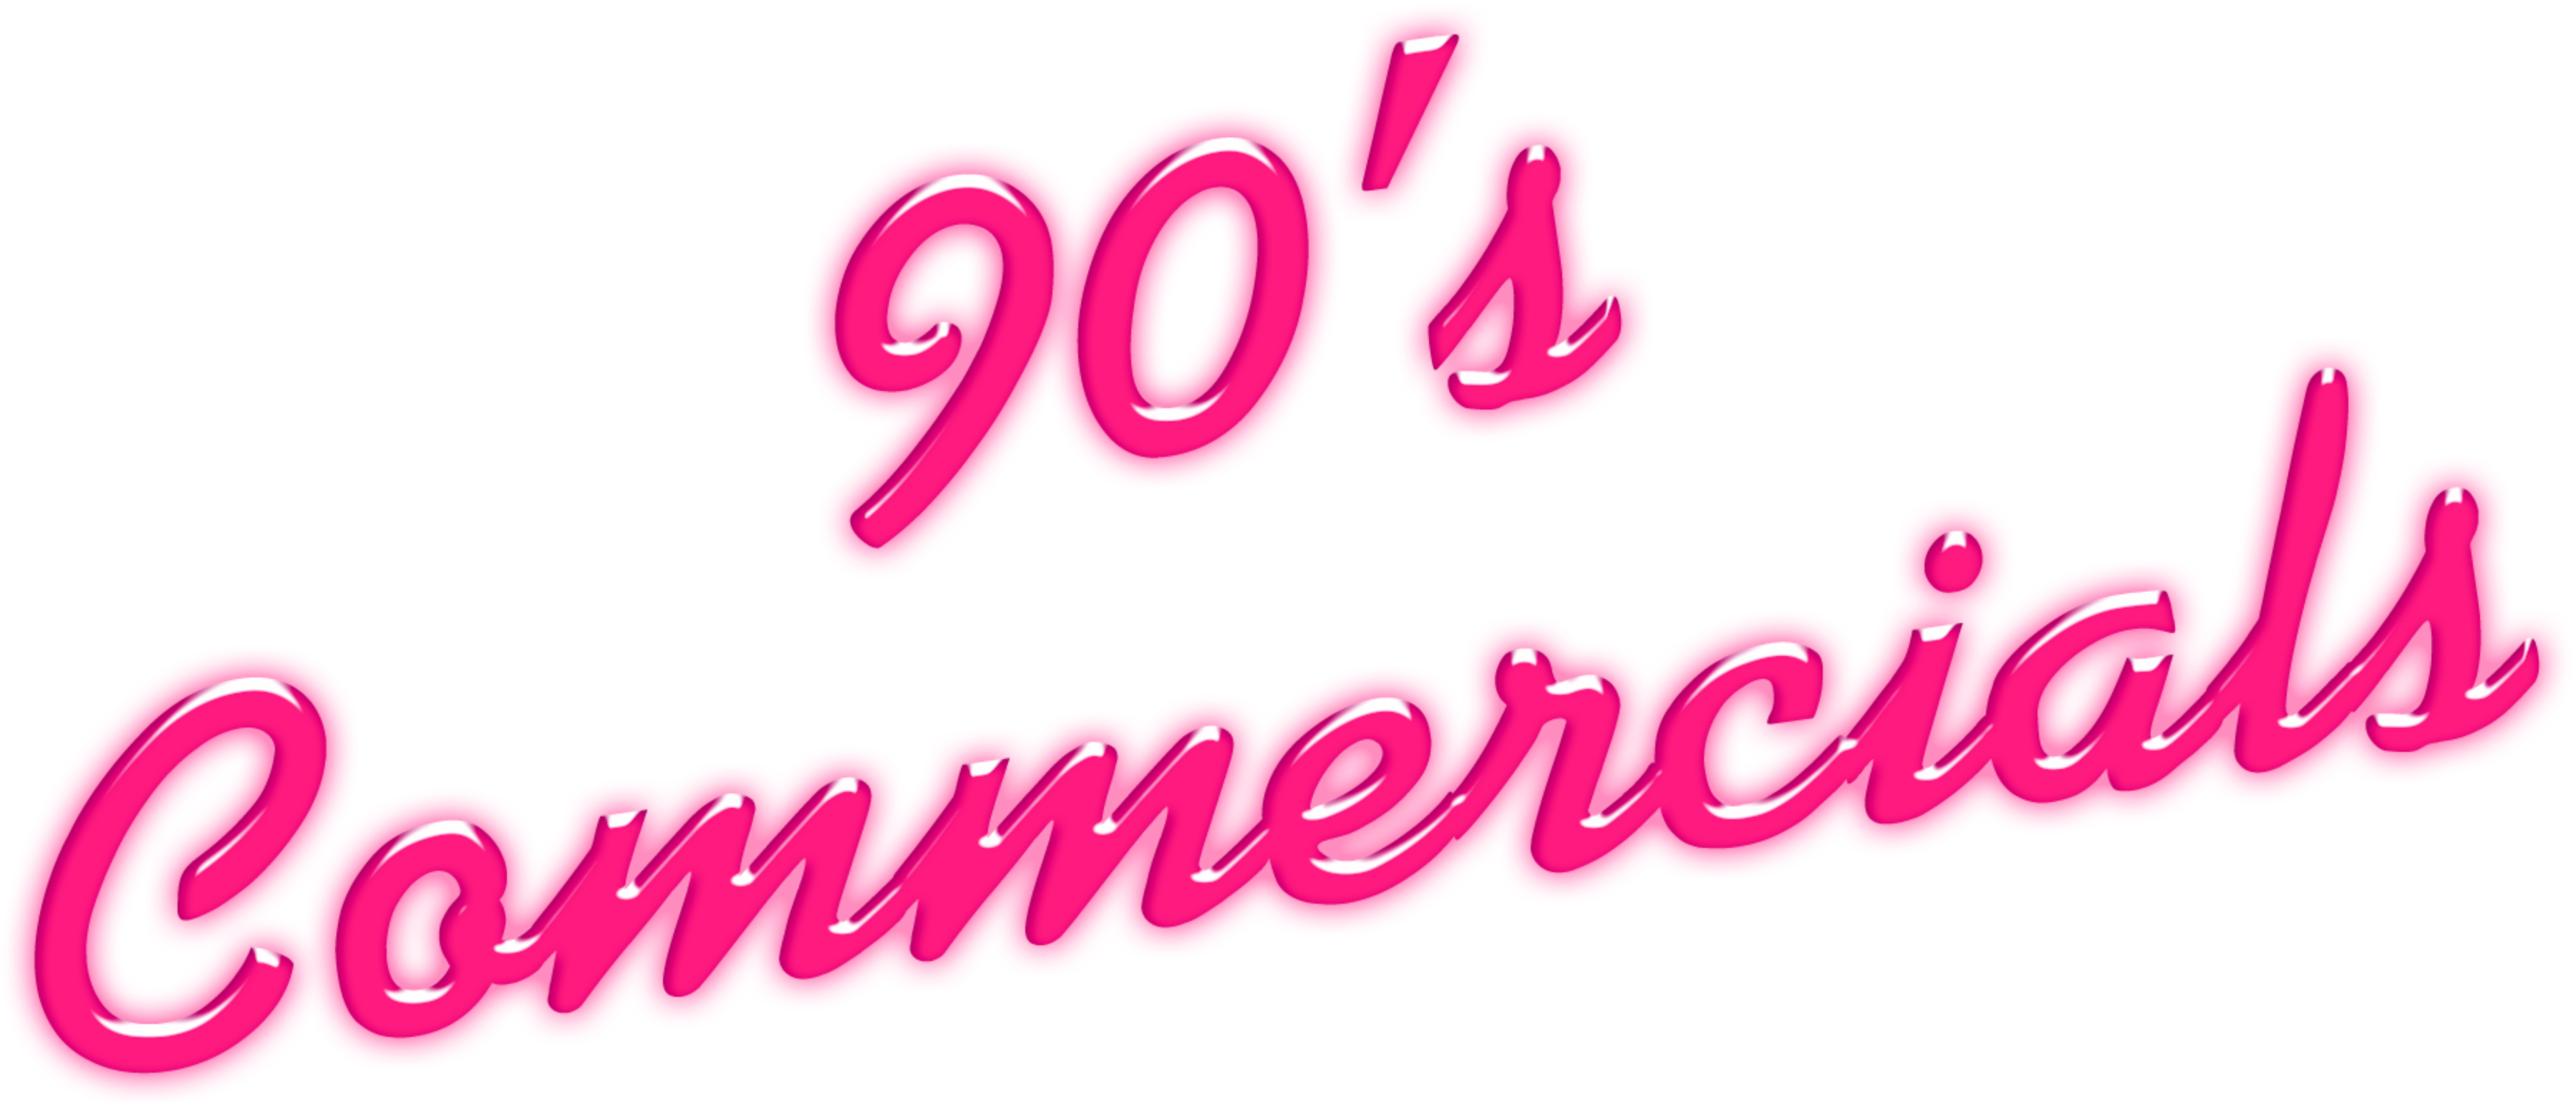 90's Commercials Disc 7